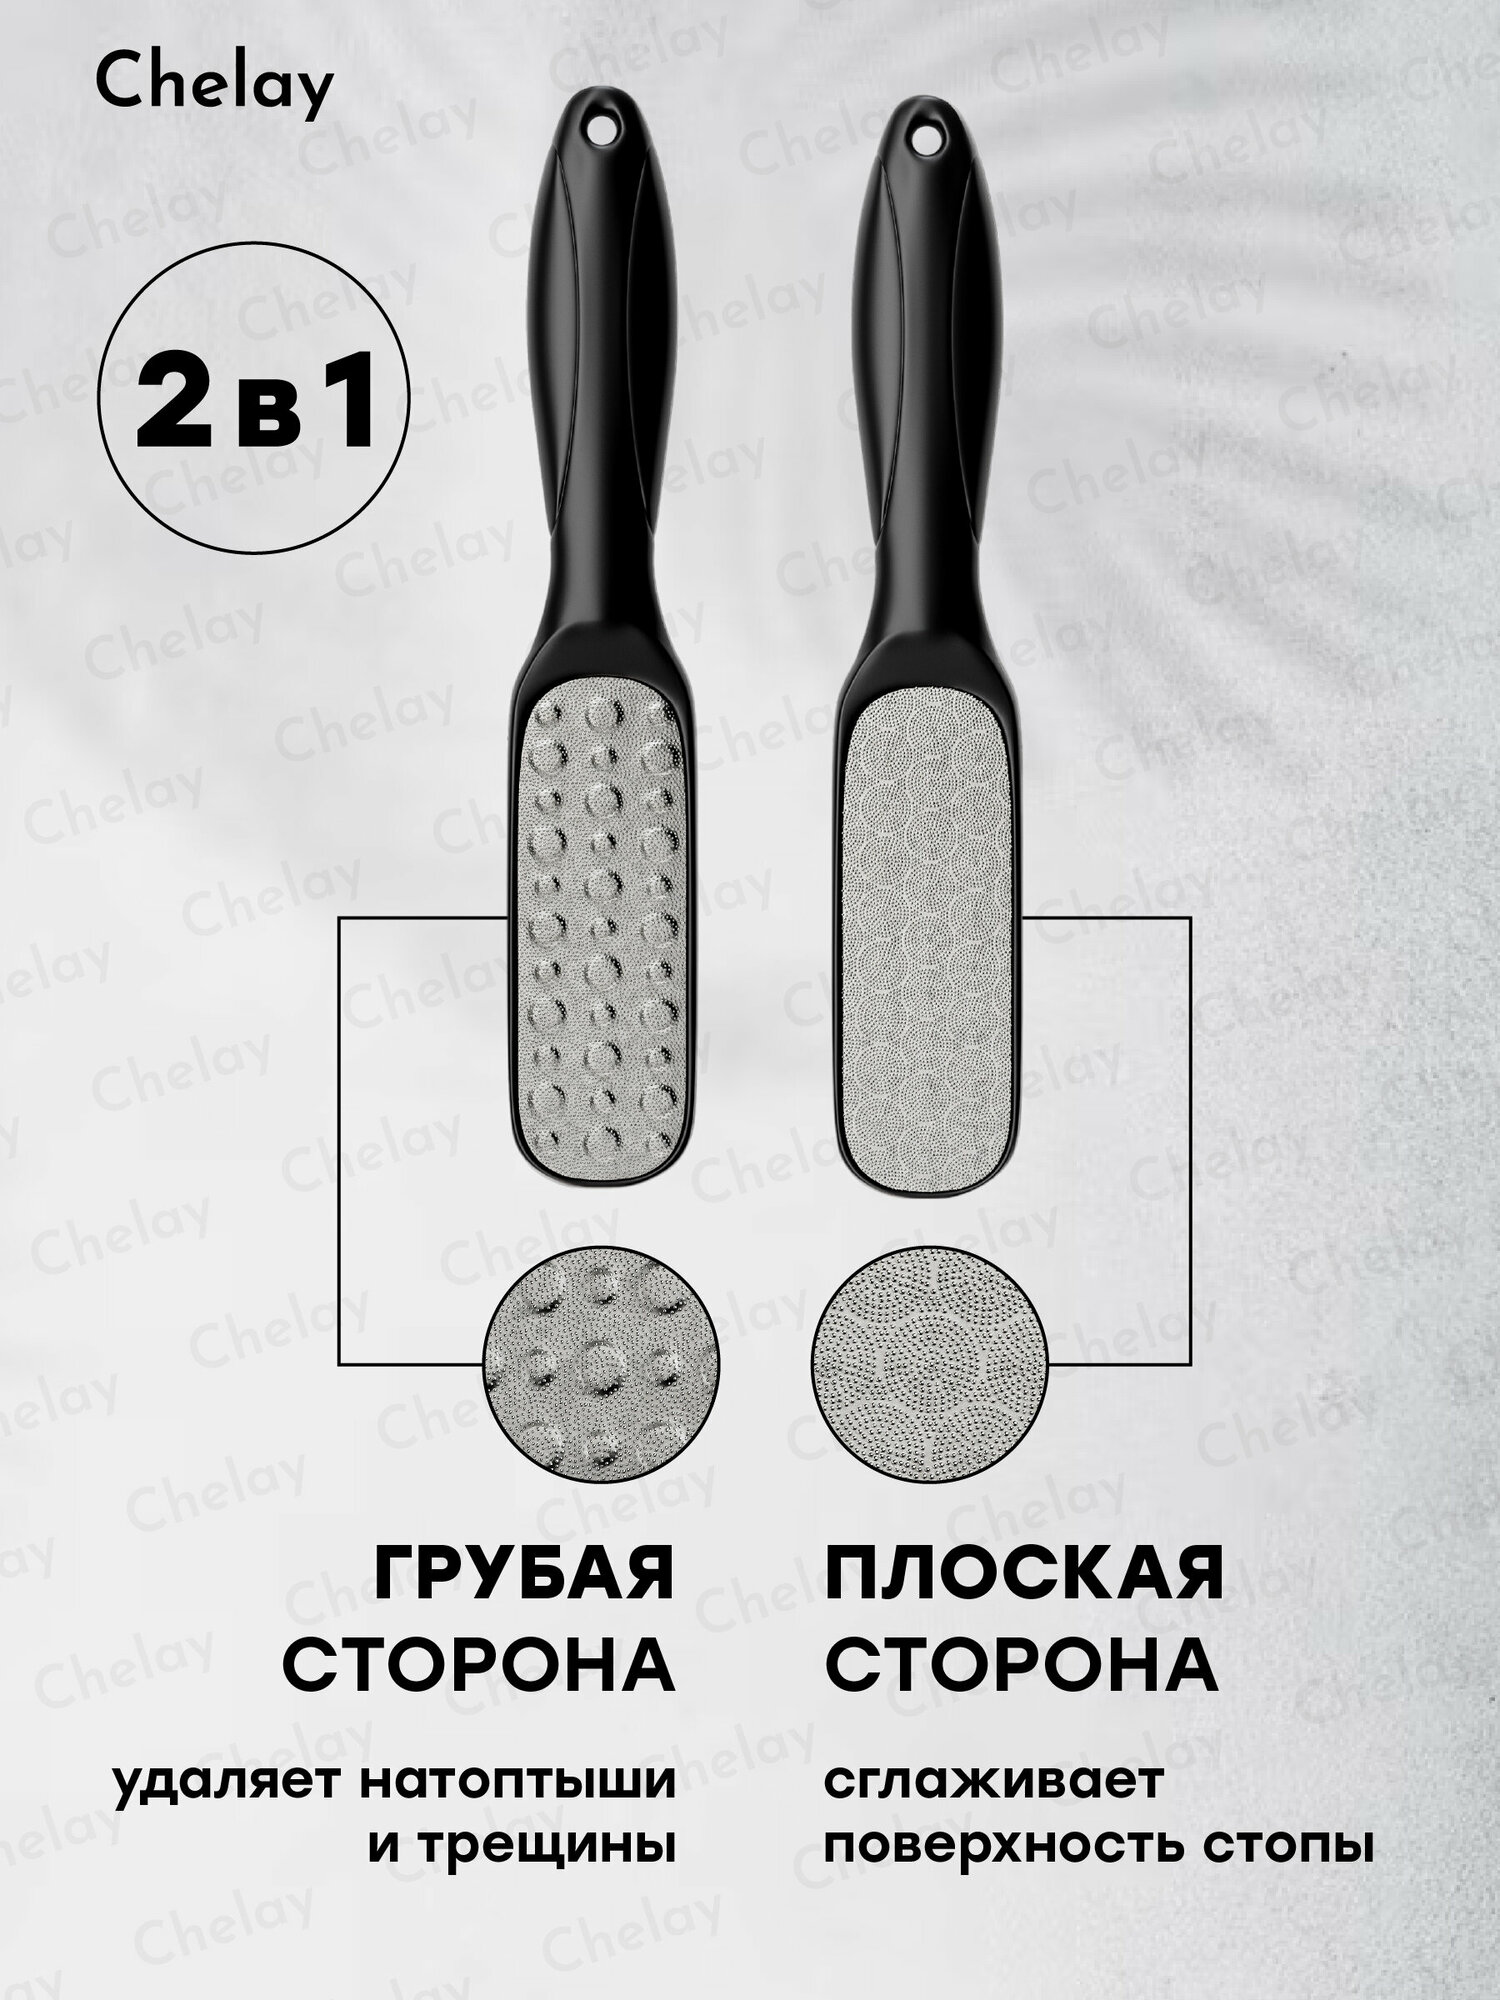 Лазерная педикюрная терка пемза пилка для ног или пяток металлическая двухсторонняя Chelay